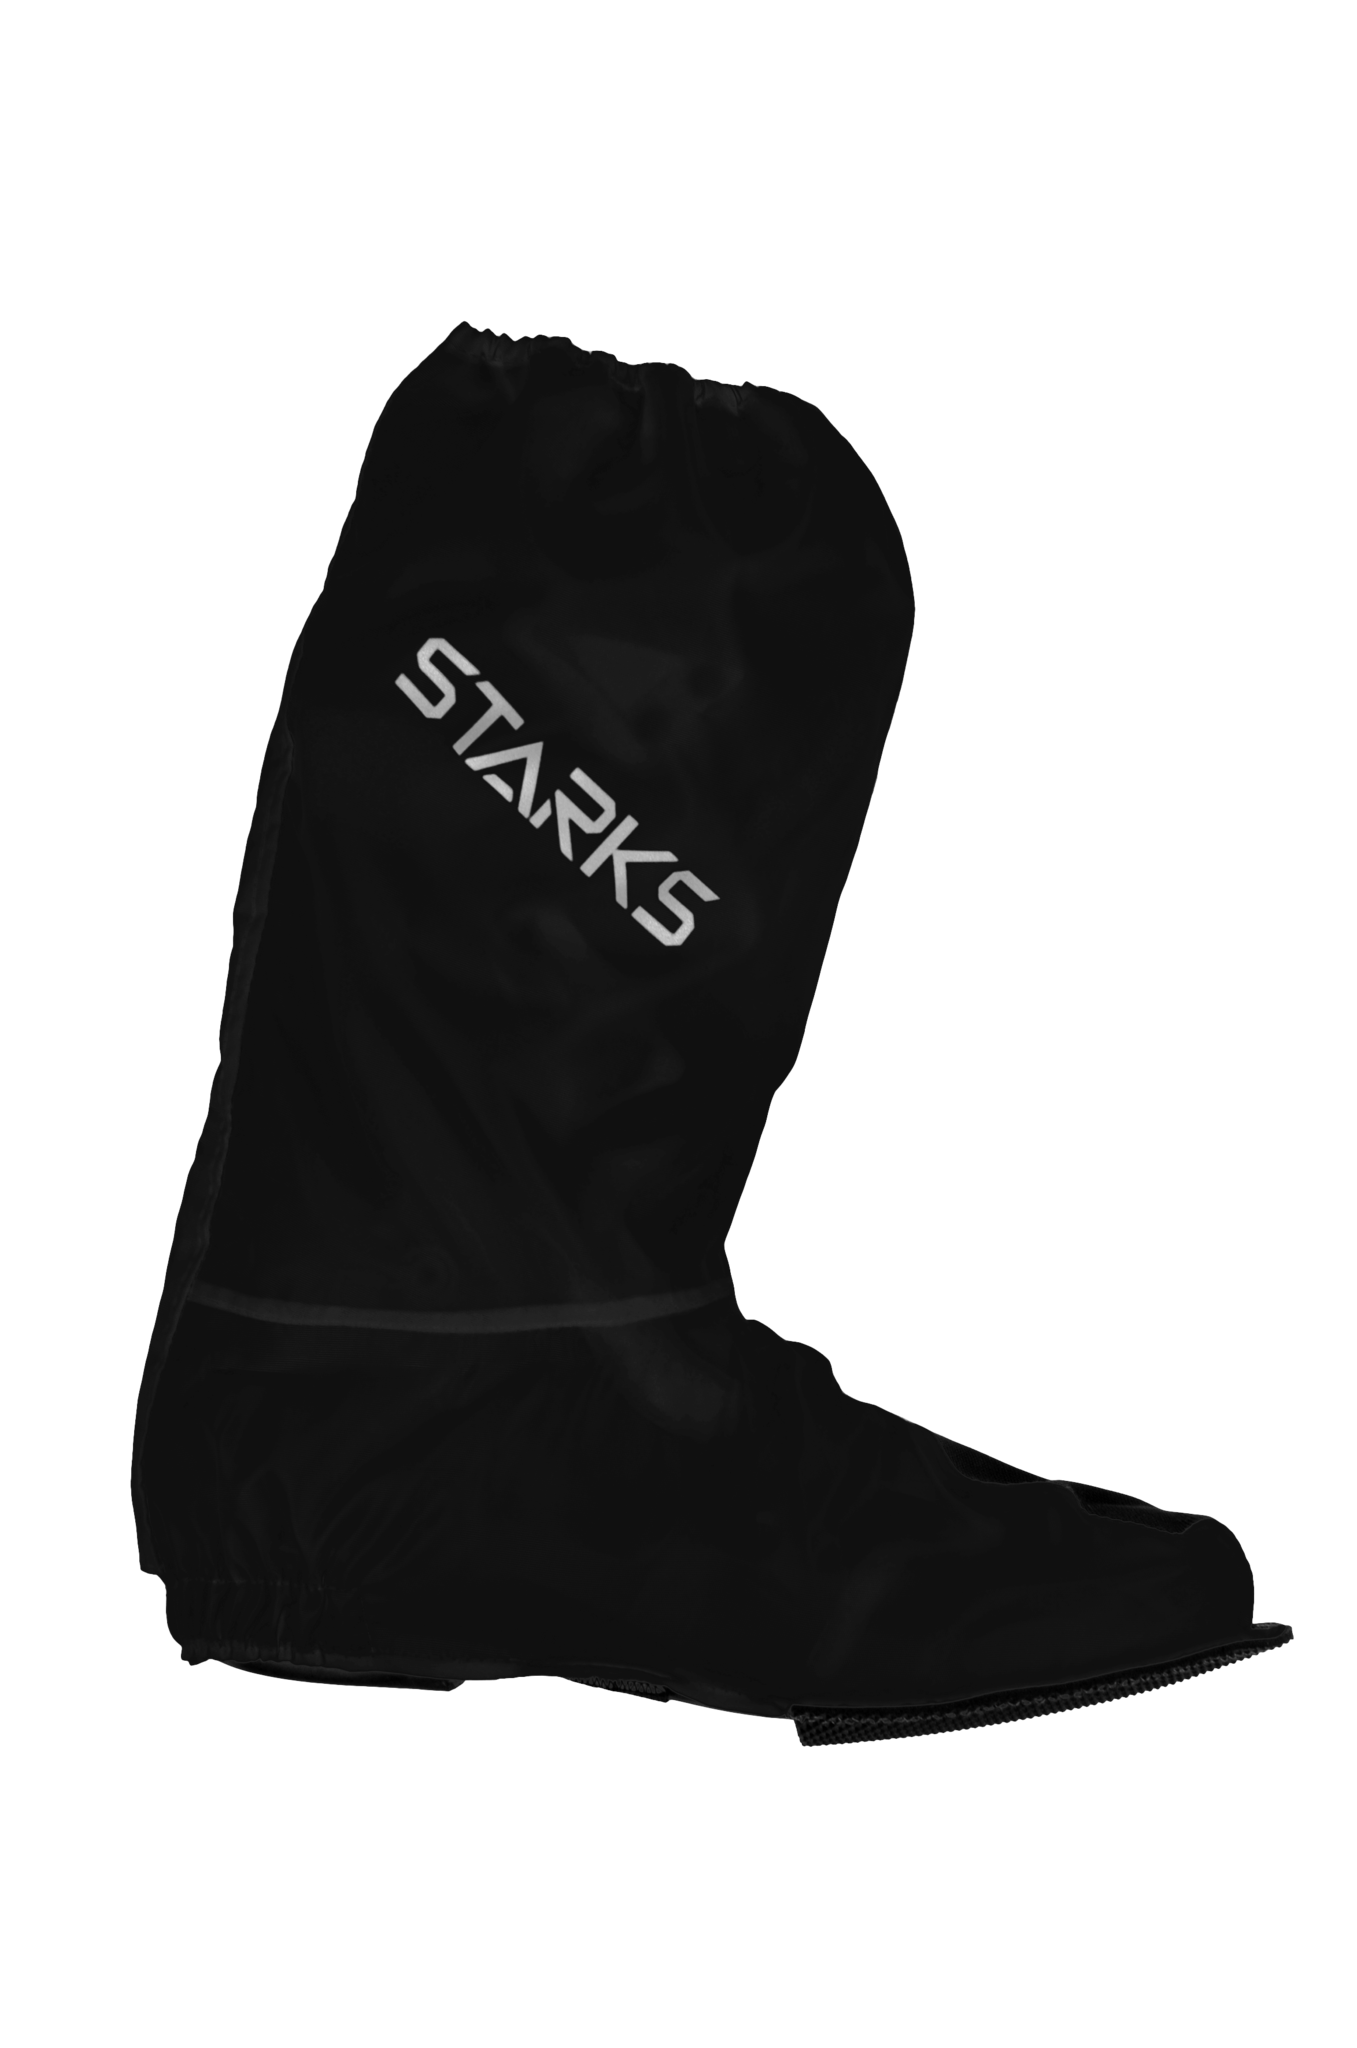 Дождевые бахилы Starks Rain Boots (чёрный) подошва в половину ступни